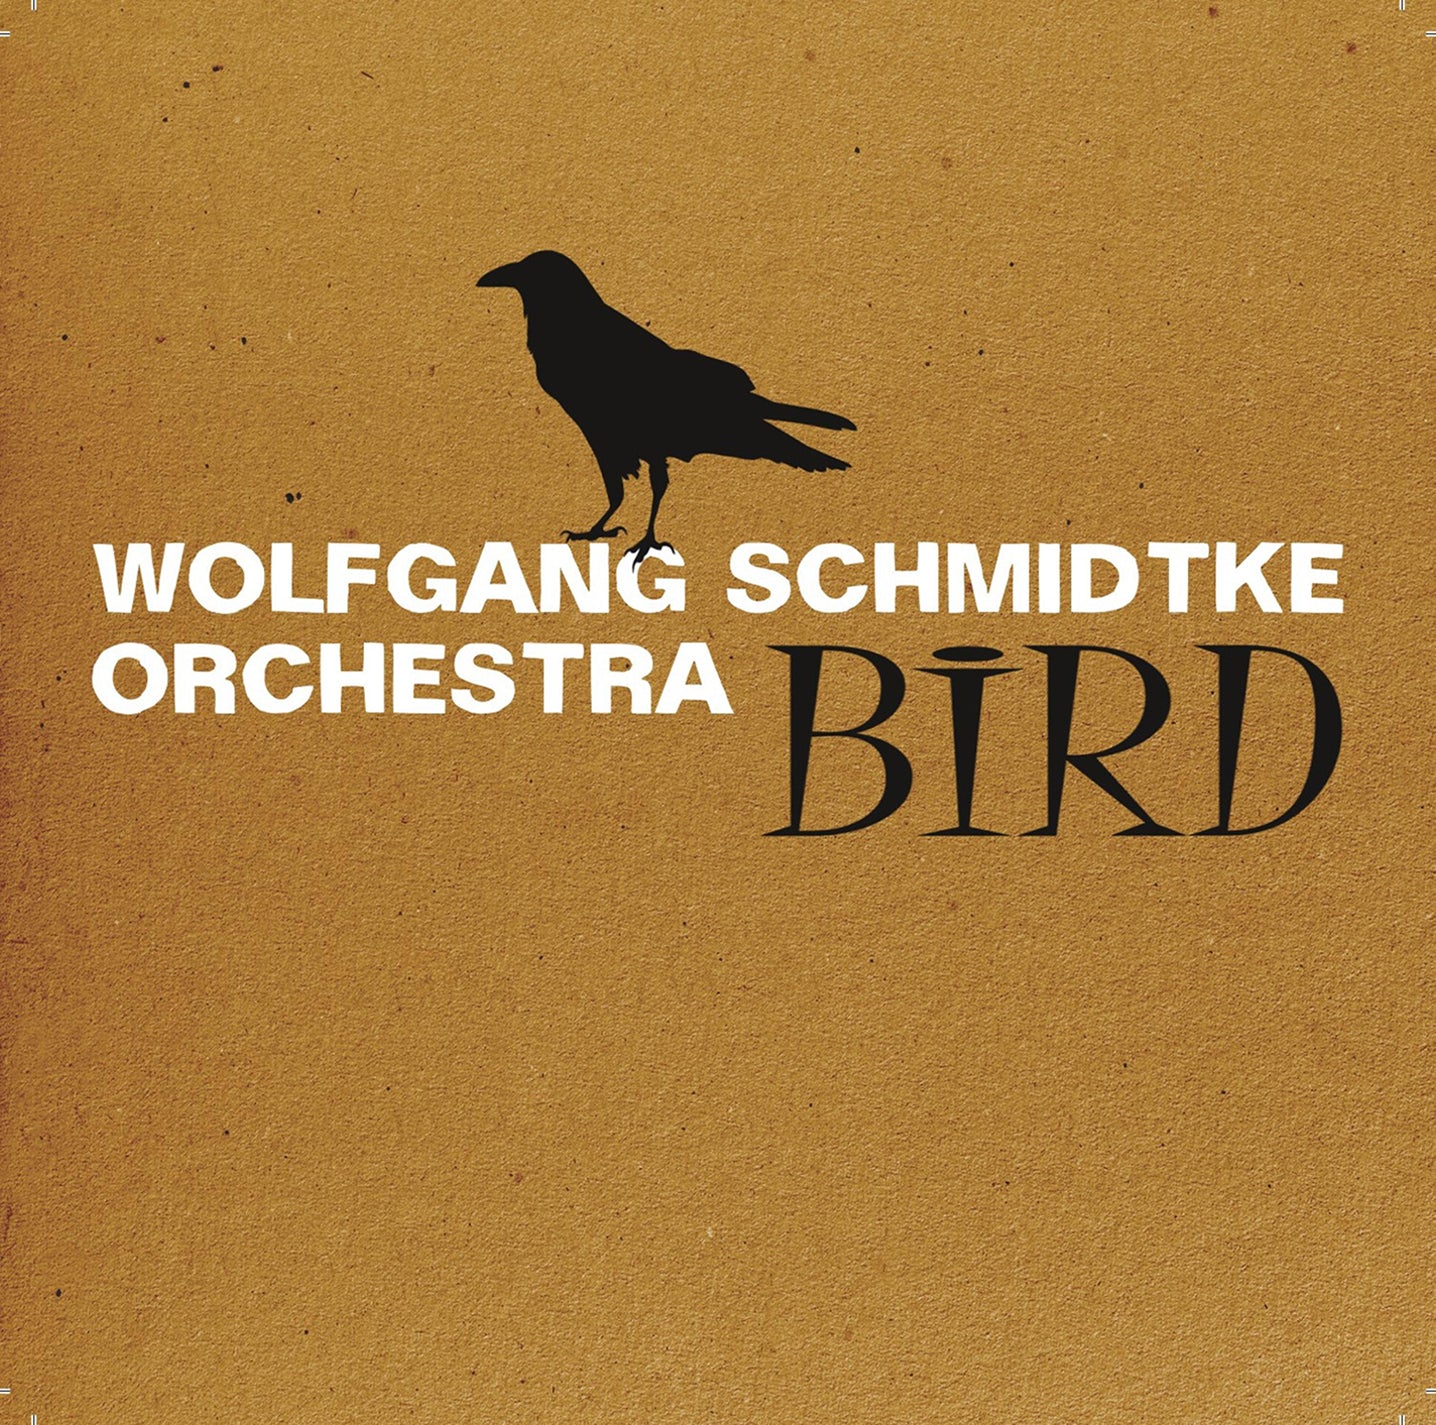 Bird / Wolfgang Schmidtke Orchestra